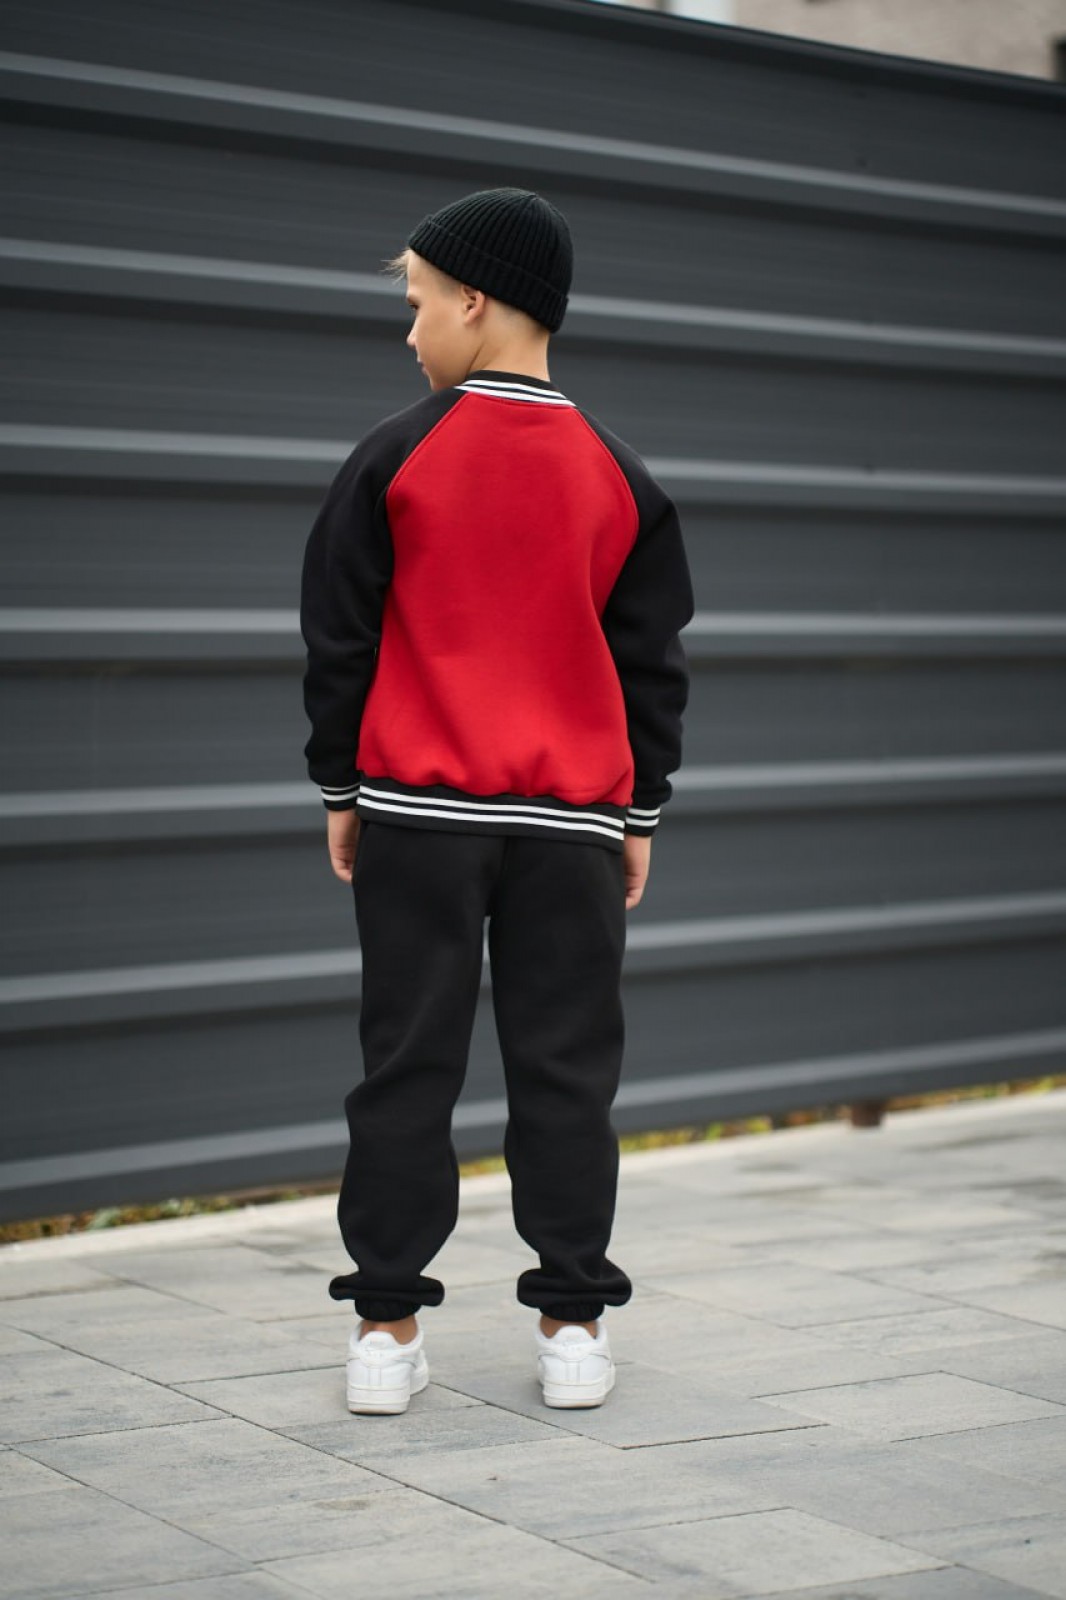 Спортивний дитячий костюм для хлопчика колір червоний р.170 443623